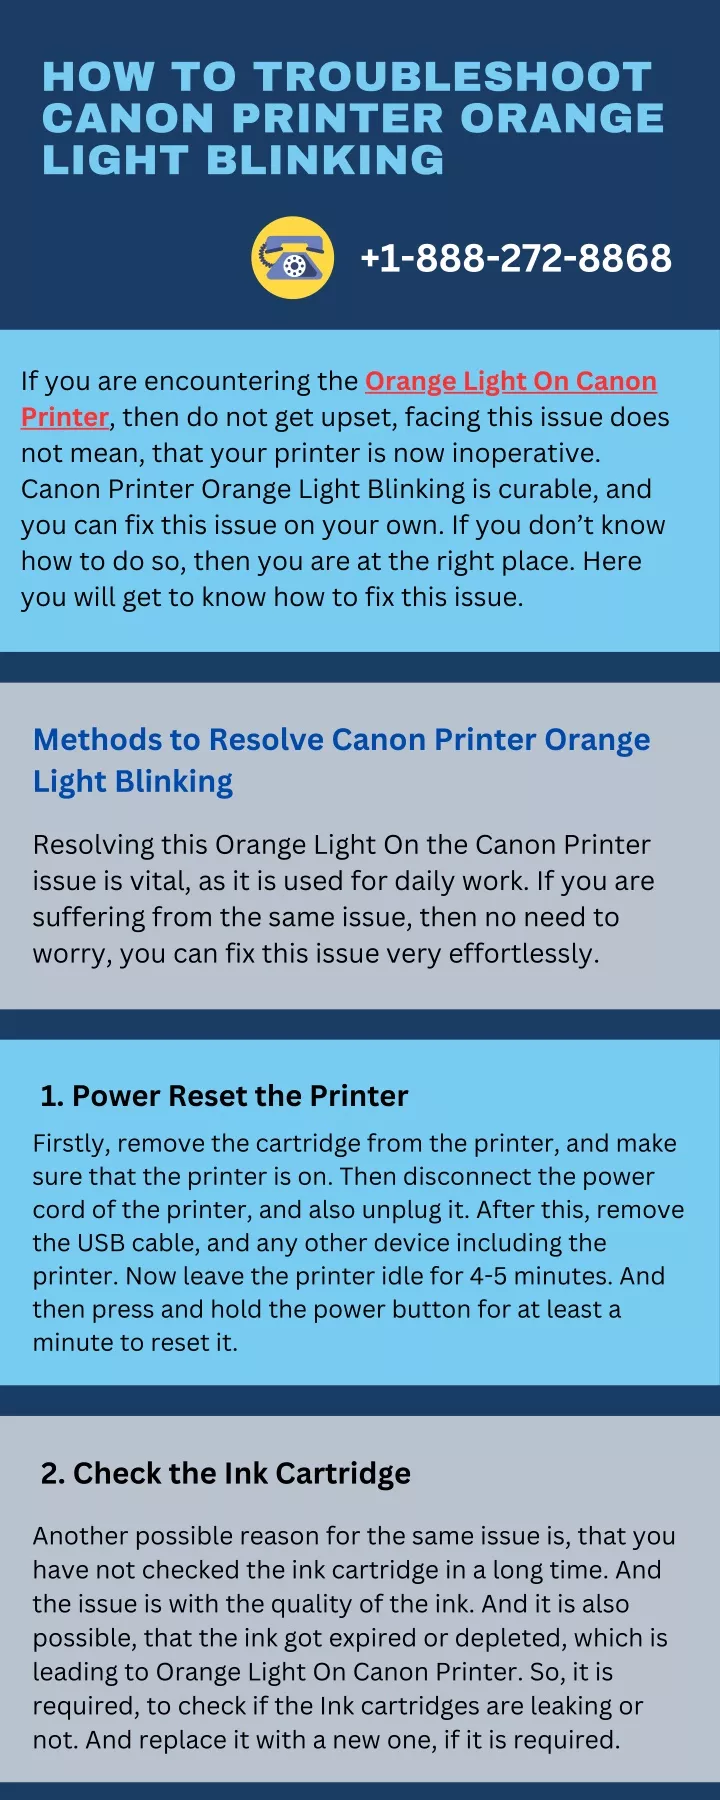 how to troubleshoot canon printer orange light